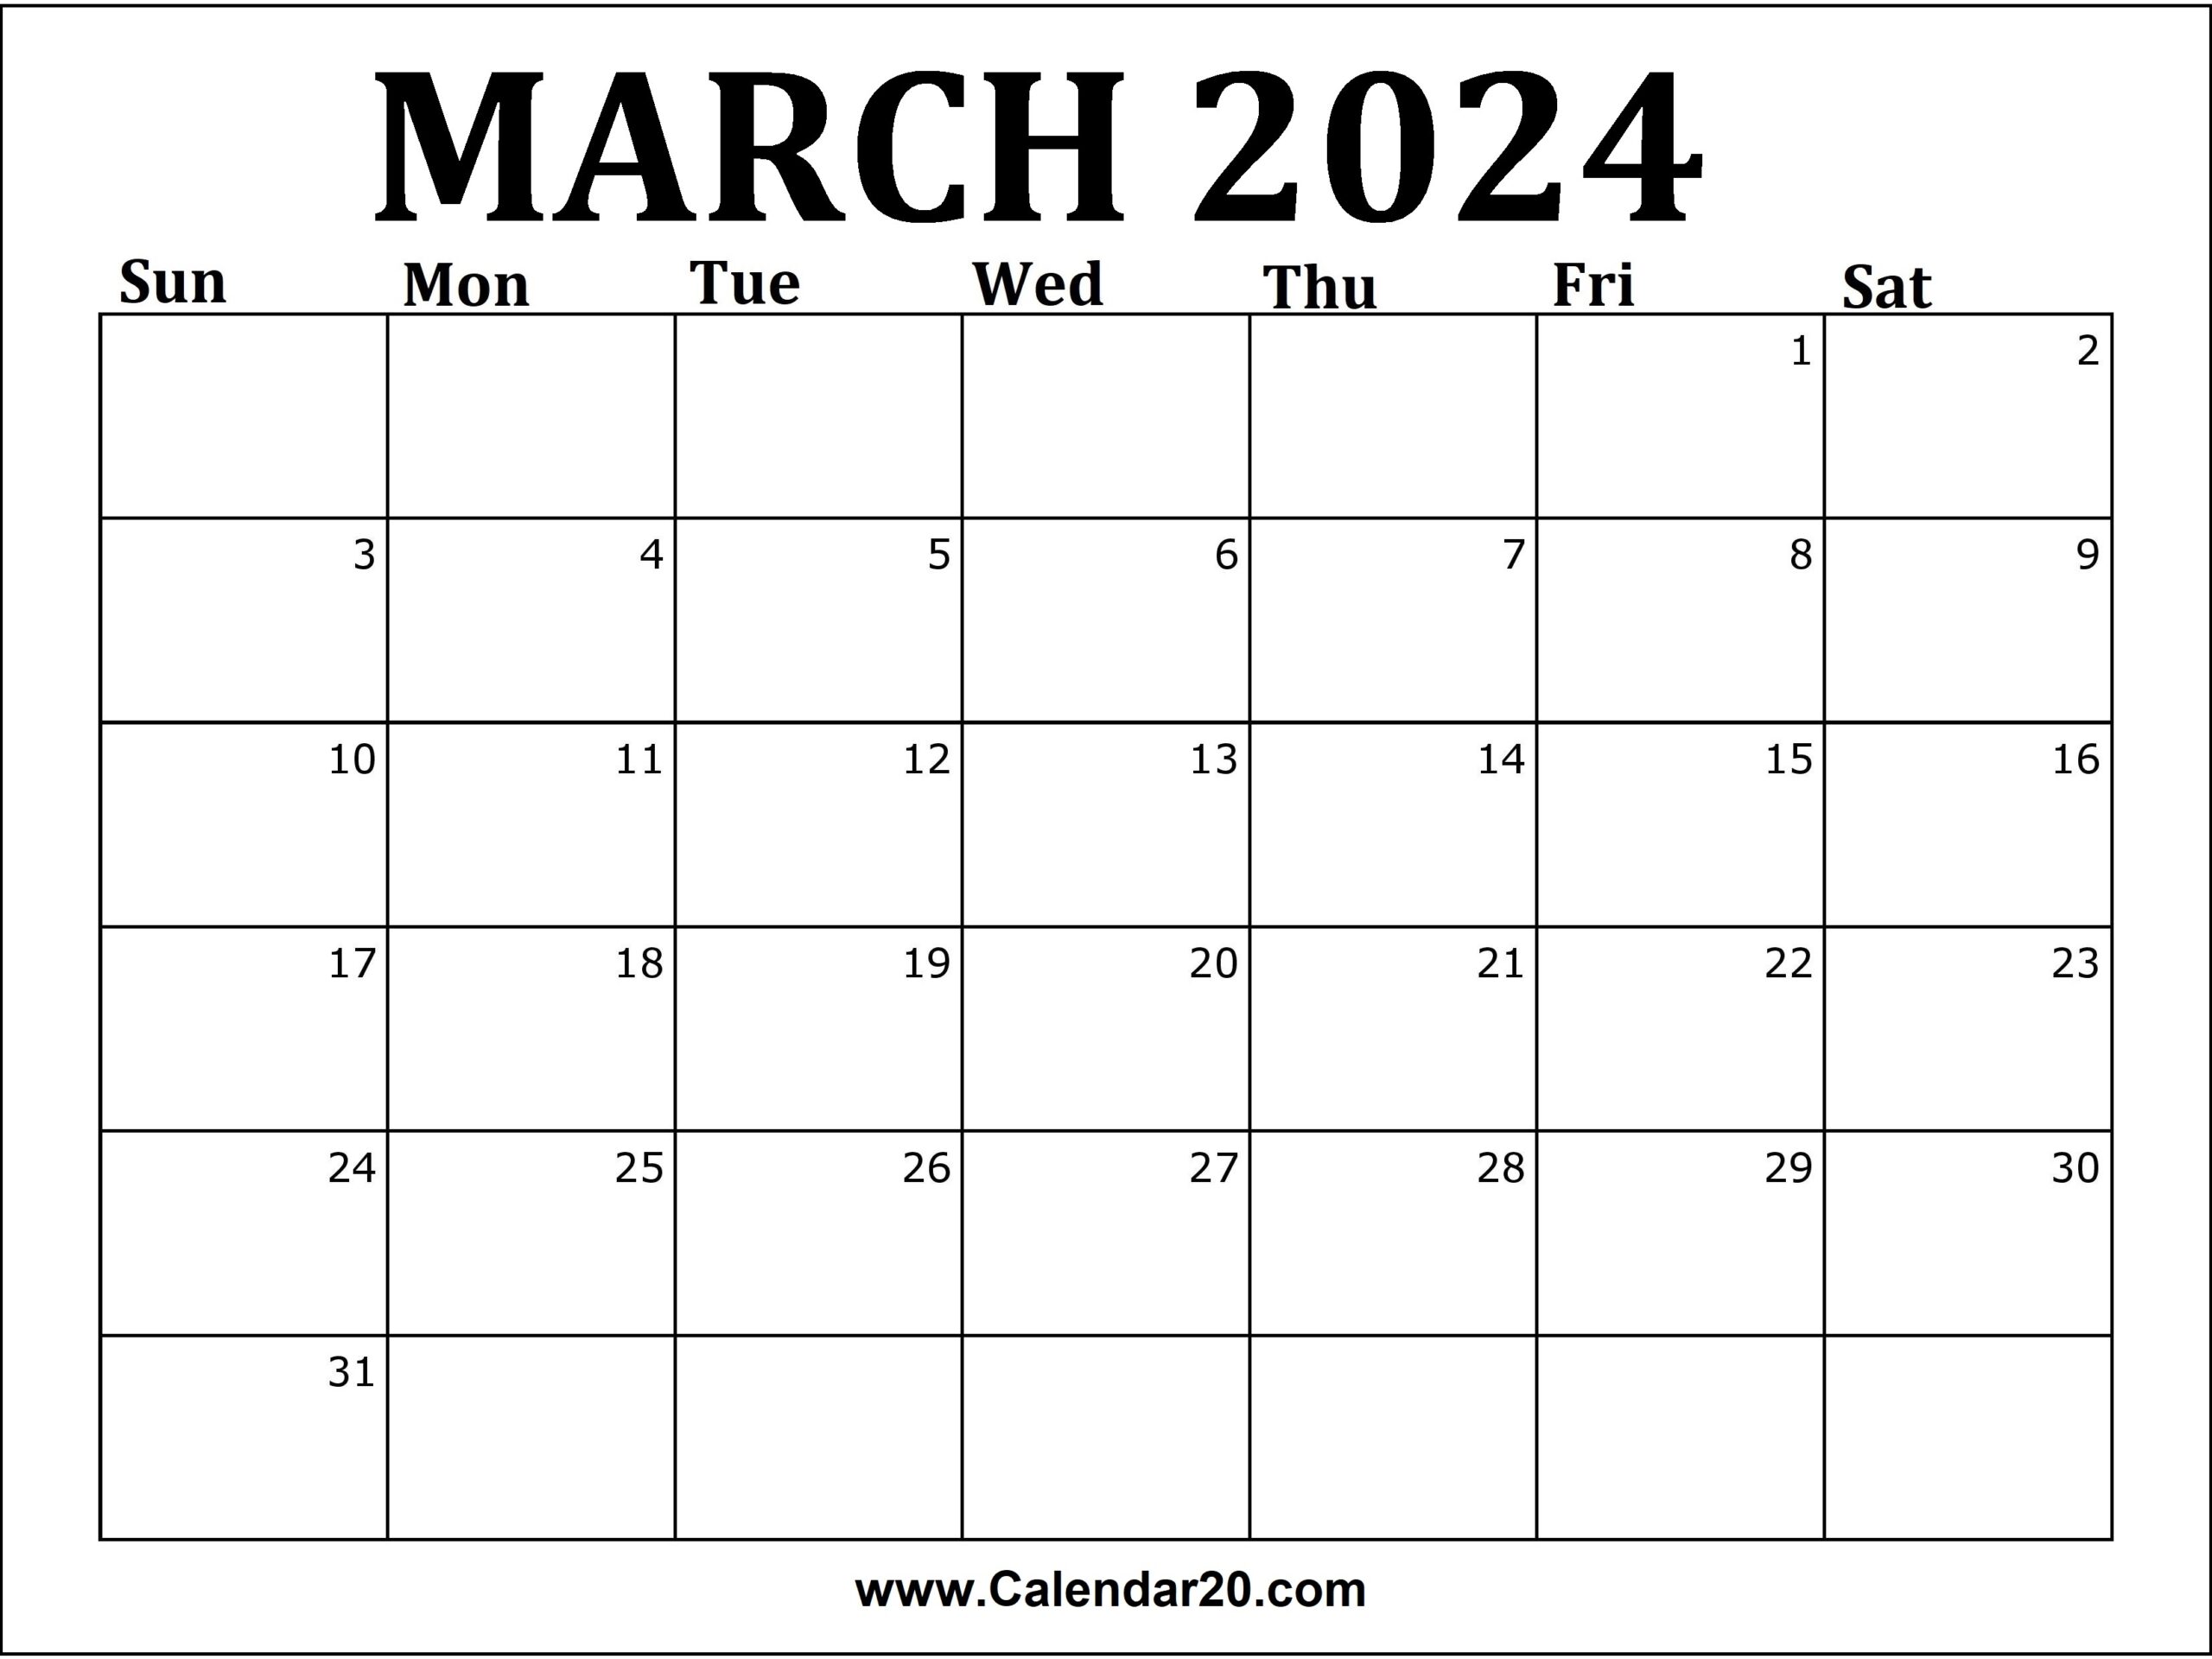 March 2024 Printable Calendar Calendar20 | Free Printable 2024 March Calendar